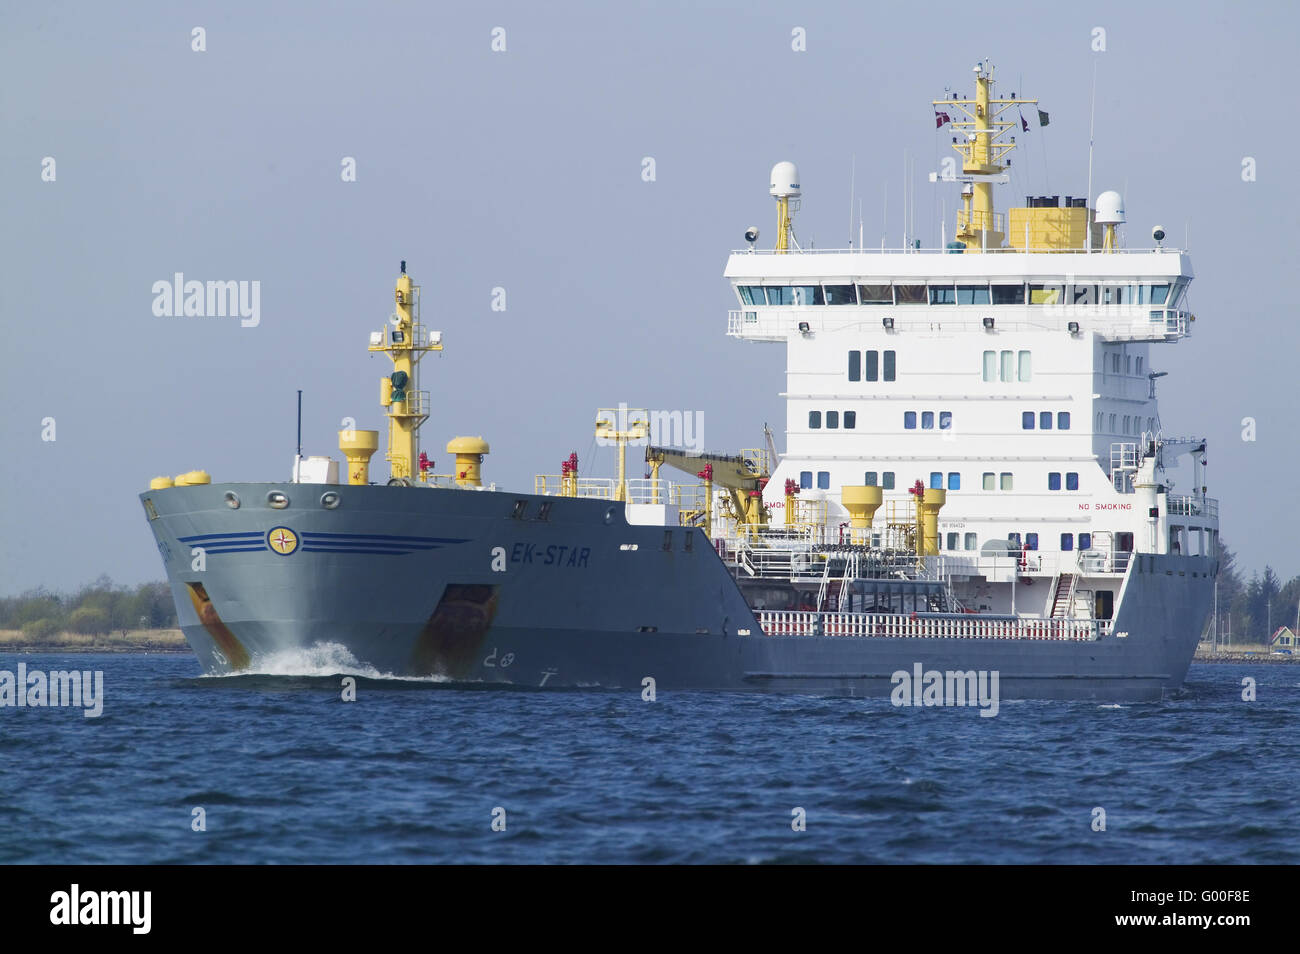 oiltanker Stock Photo